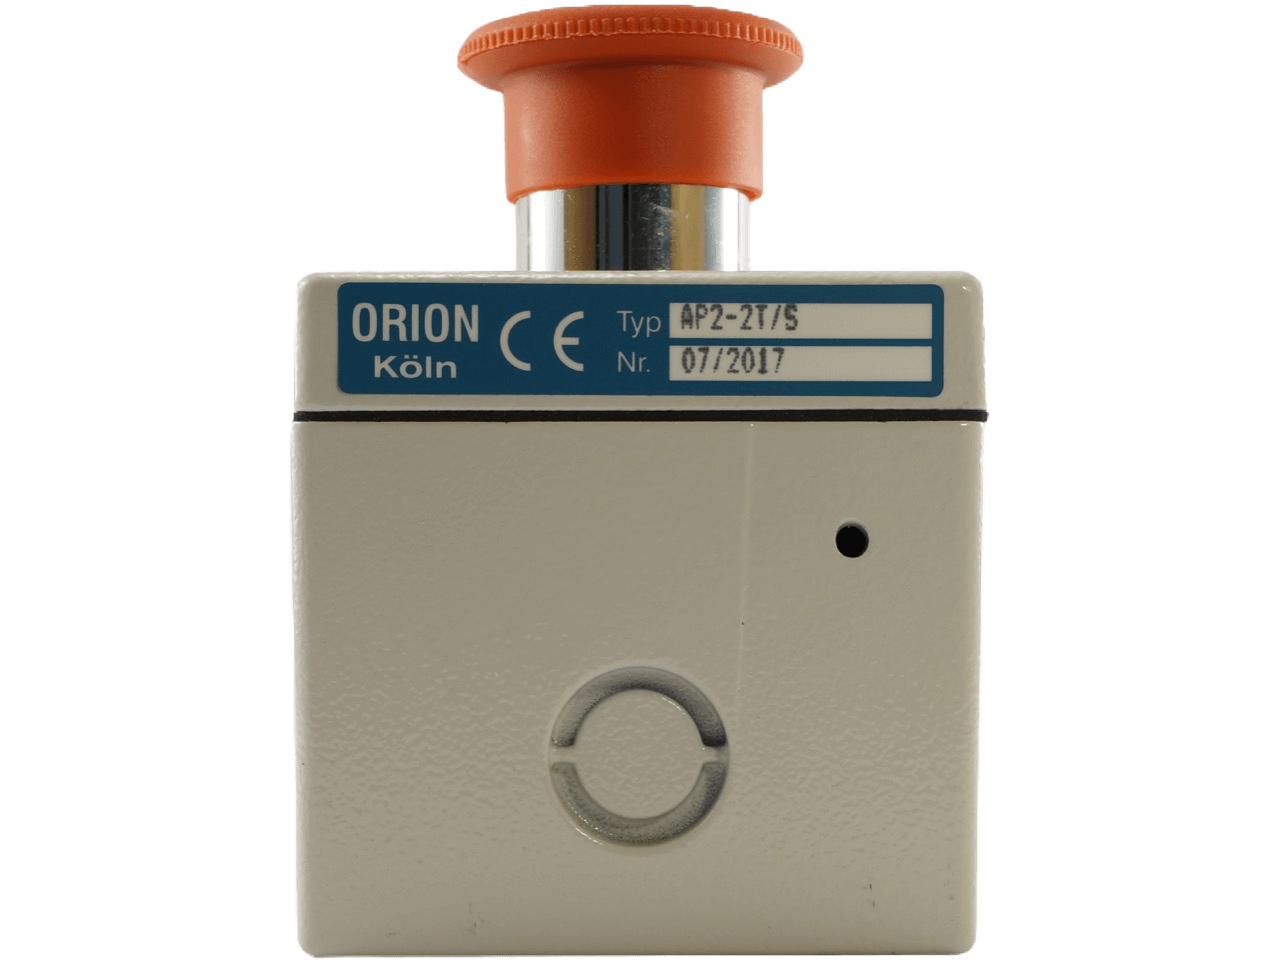 Orion AP 2-2 T/S Schlüsseltaster Aufputz 2-seitig mit Not-AUS Schalter